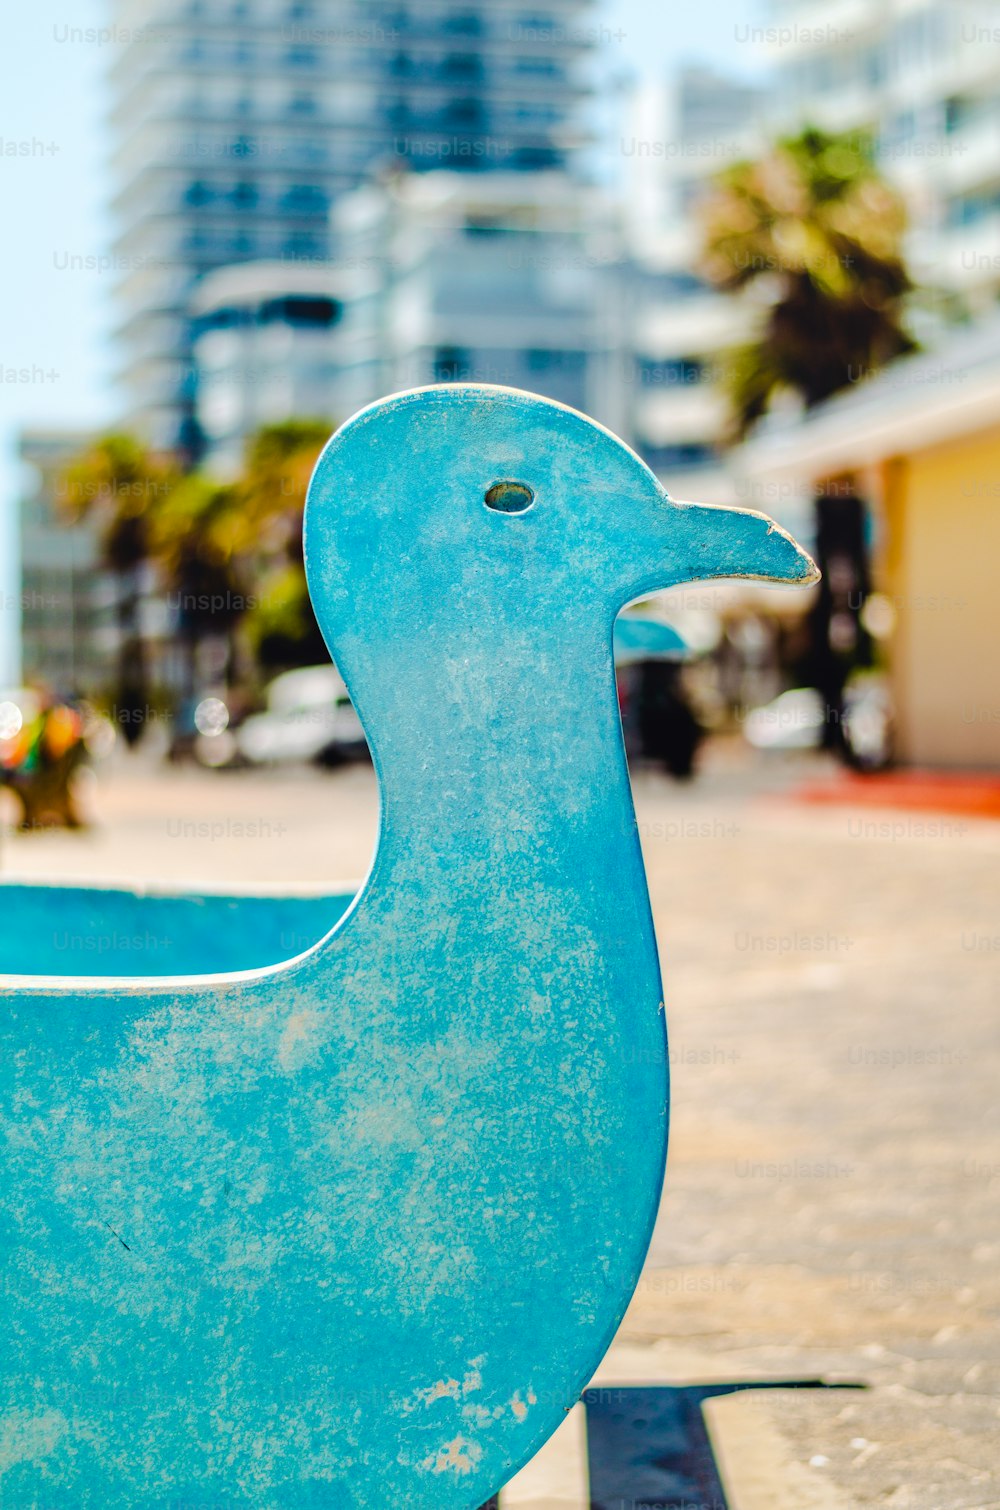 Una estatua de un pato azul en una acera